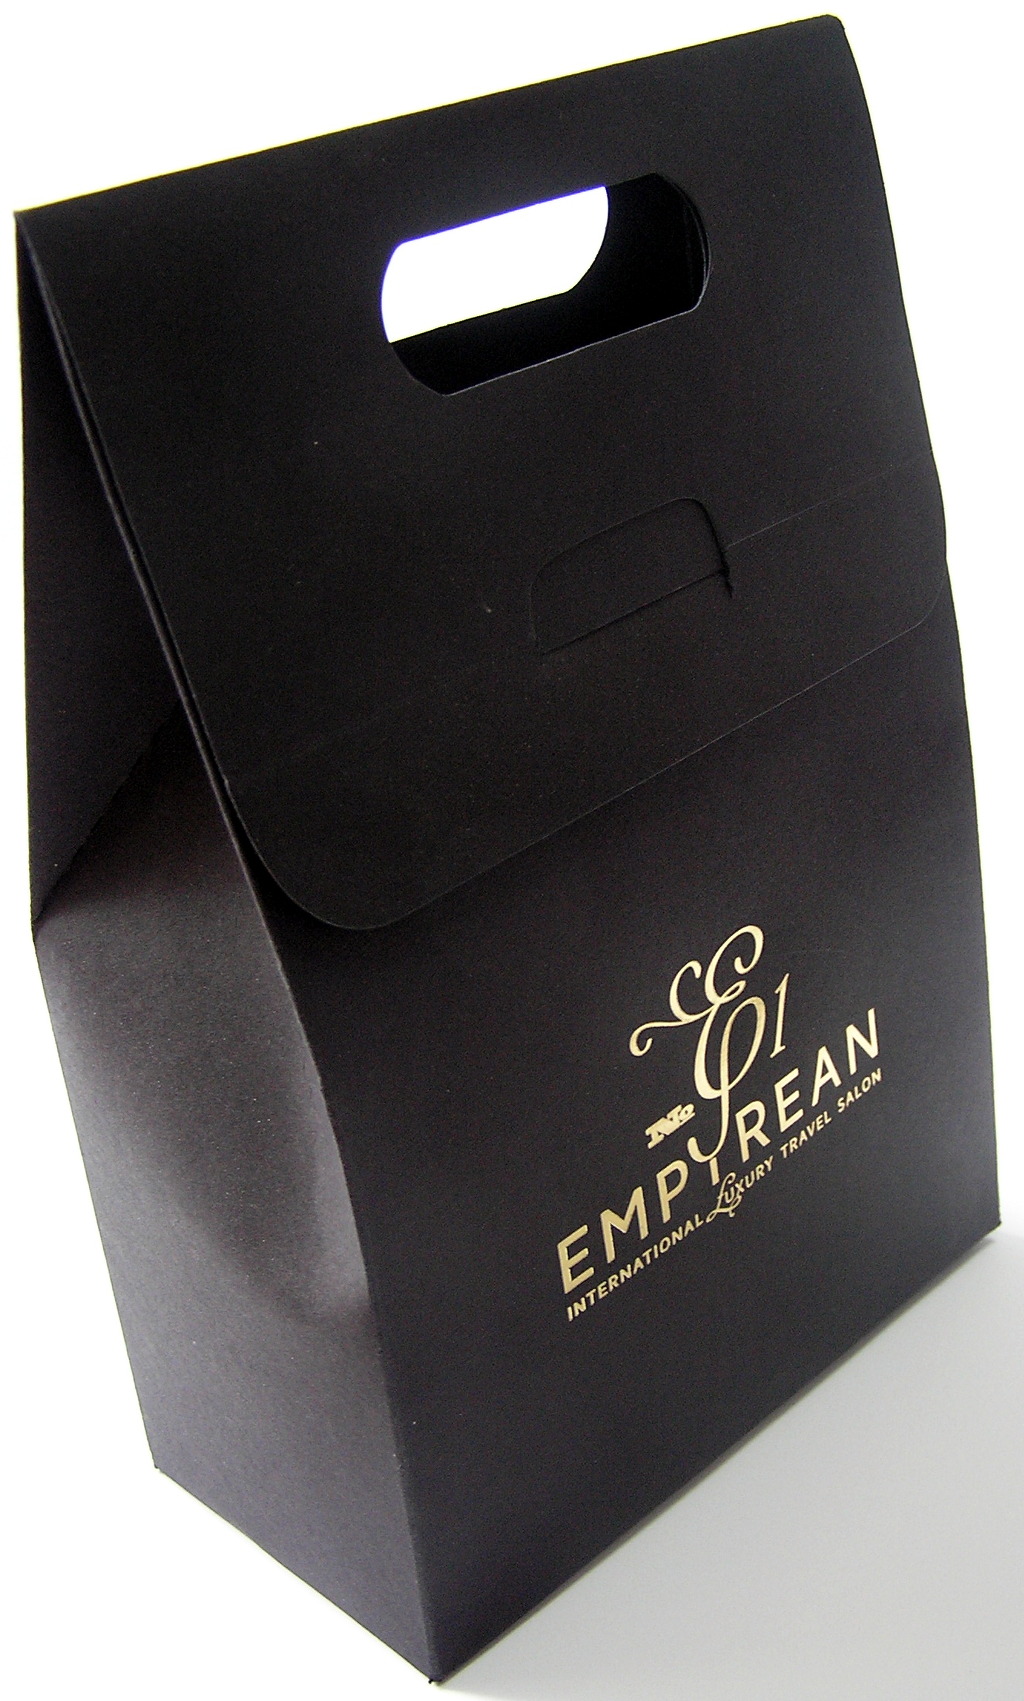 Печать упаковки «Empyrean». Полиграфия типографии Макрос, изготовление упаковки, спецификация 971990-1